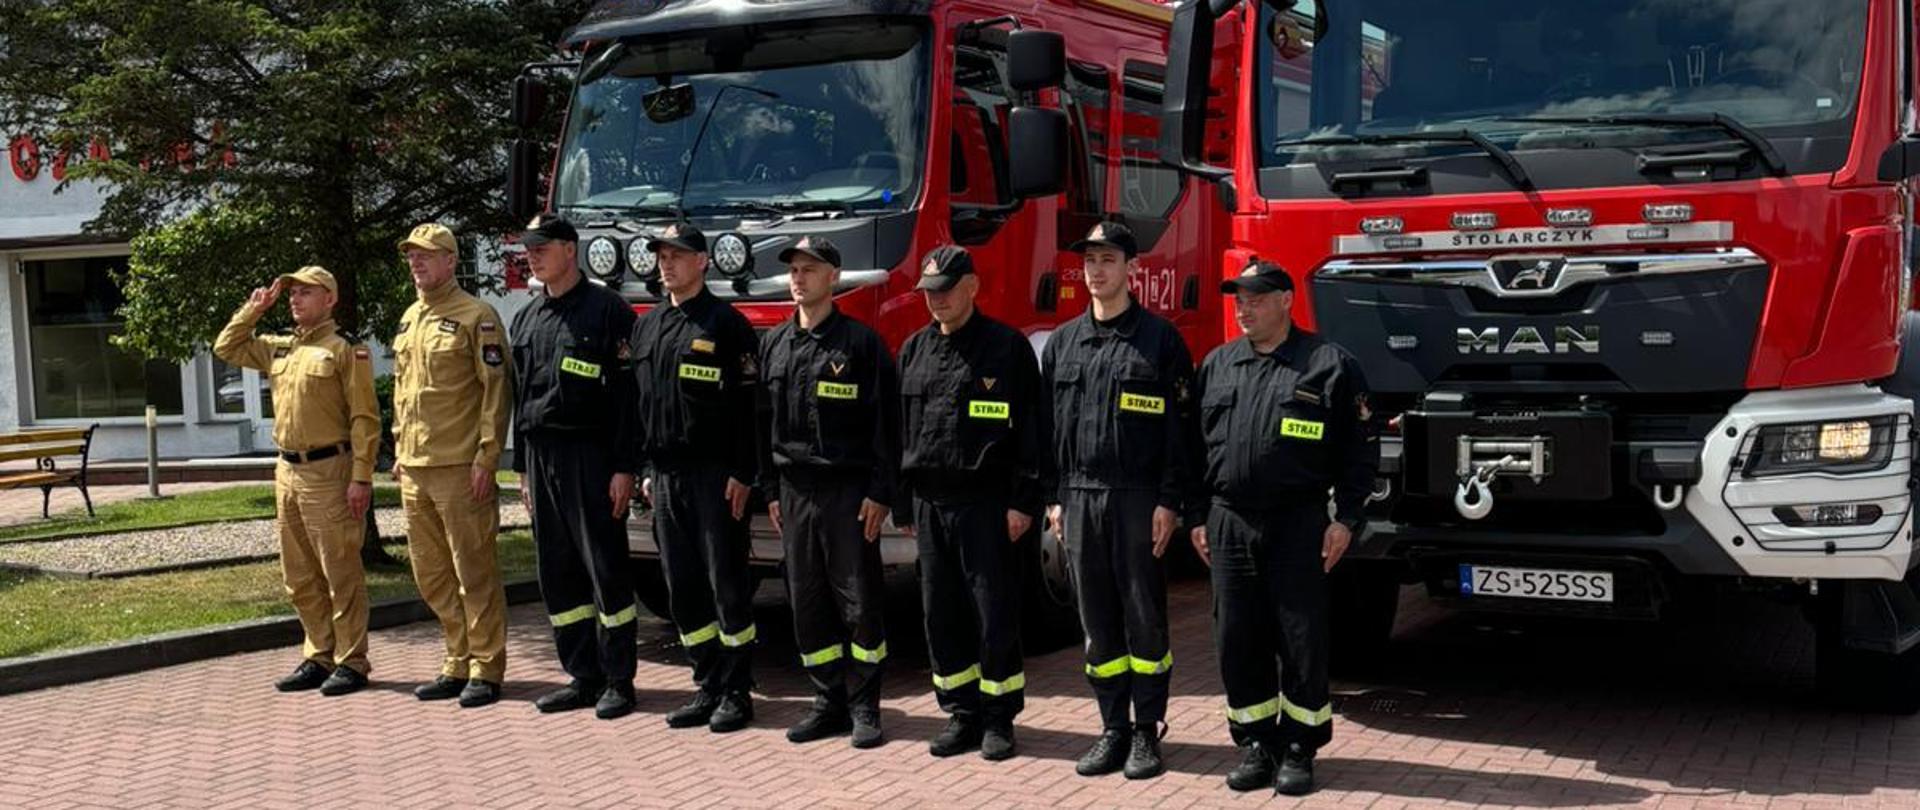 Zdjęcie przedstawia strażaków oddających hołd strażaków przy autach strażackich